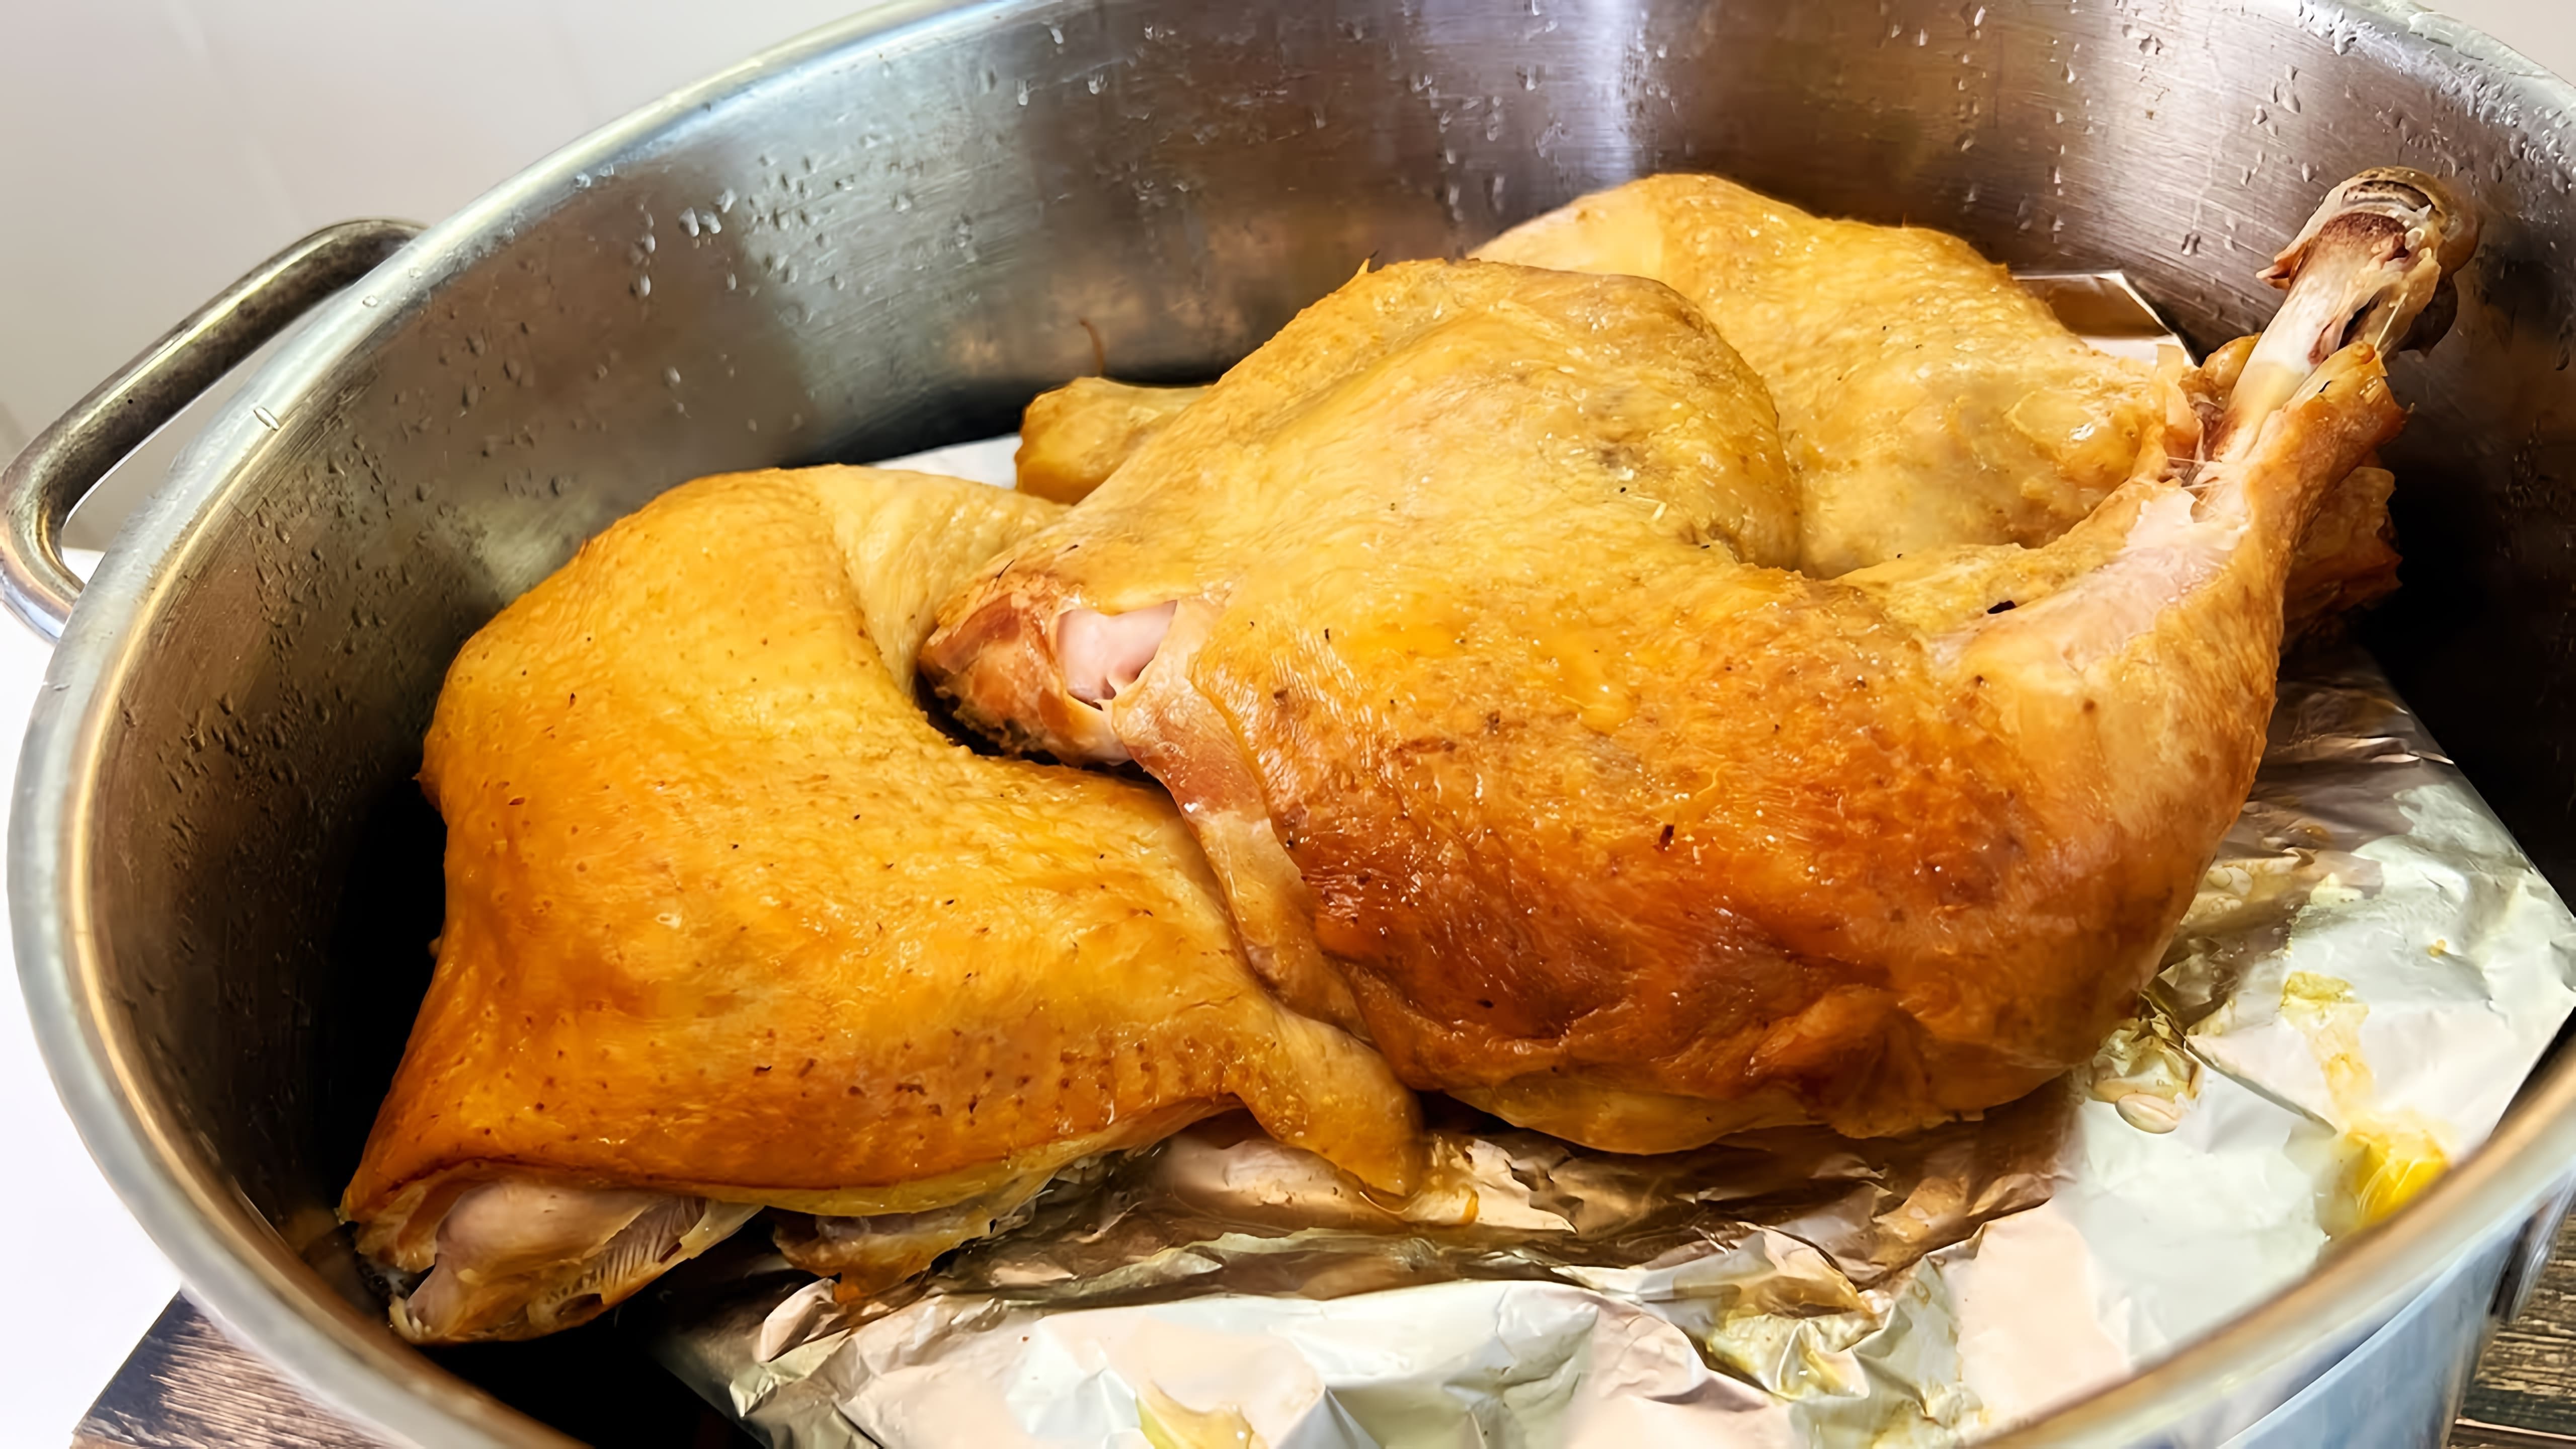 В данном видео демонстрируется процесс приготовления копченой курицы в домашних условиях